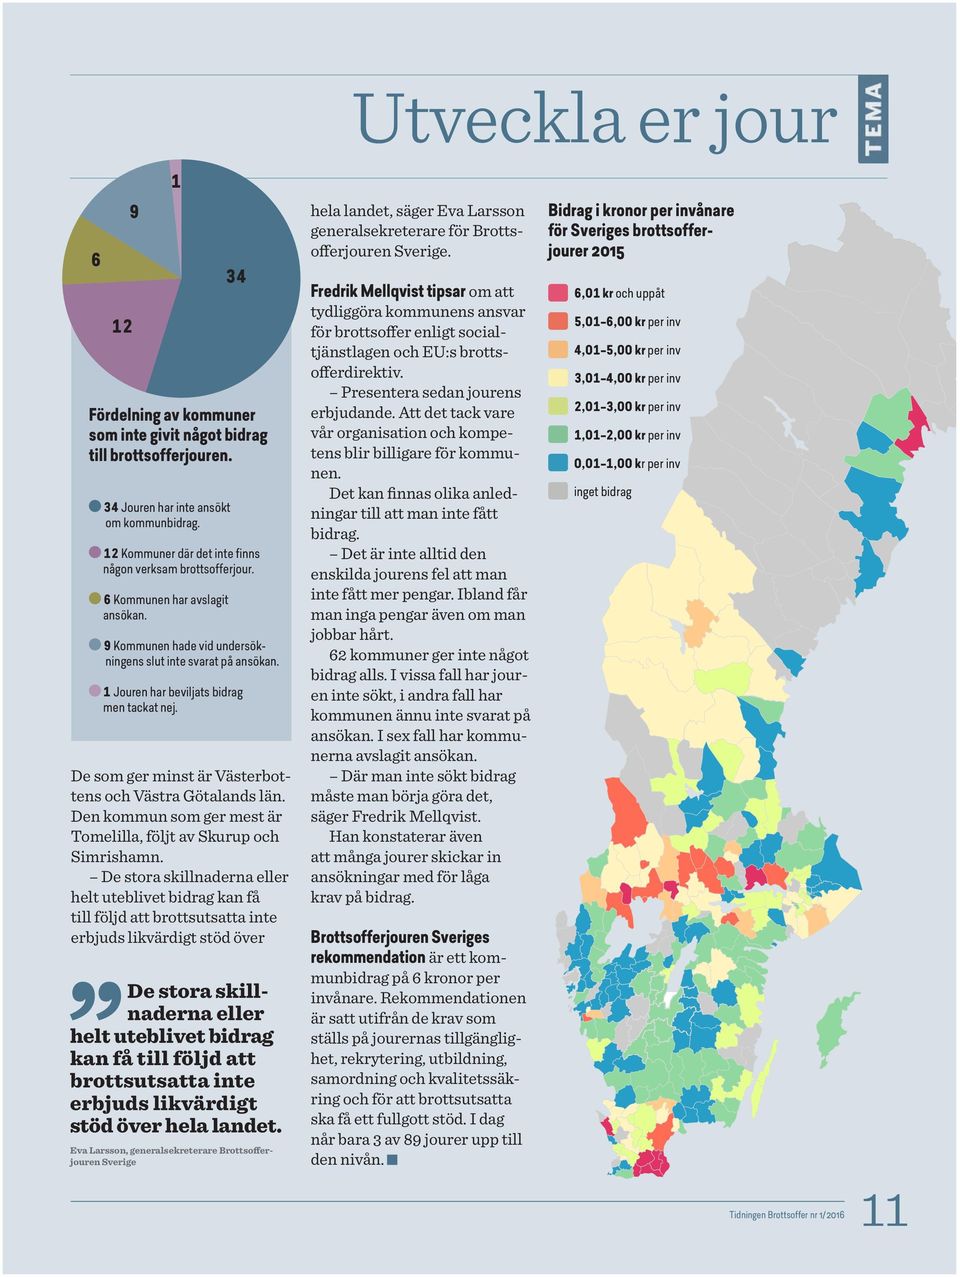 1 Jouren har beviljats bidrag men tackat nej. De som ger minst är Västerbottens och Västra Götalands län. Den kommun som ger mest är Tomelilla, följt av Skurup och Simrishamn.